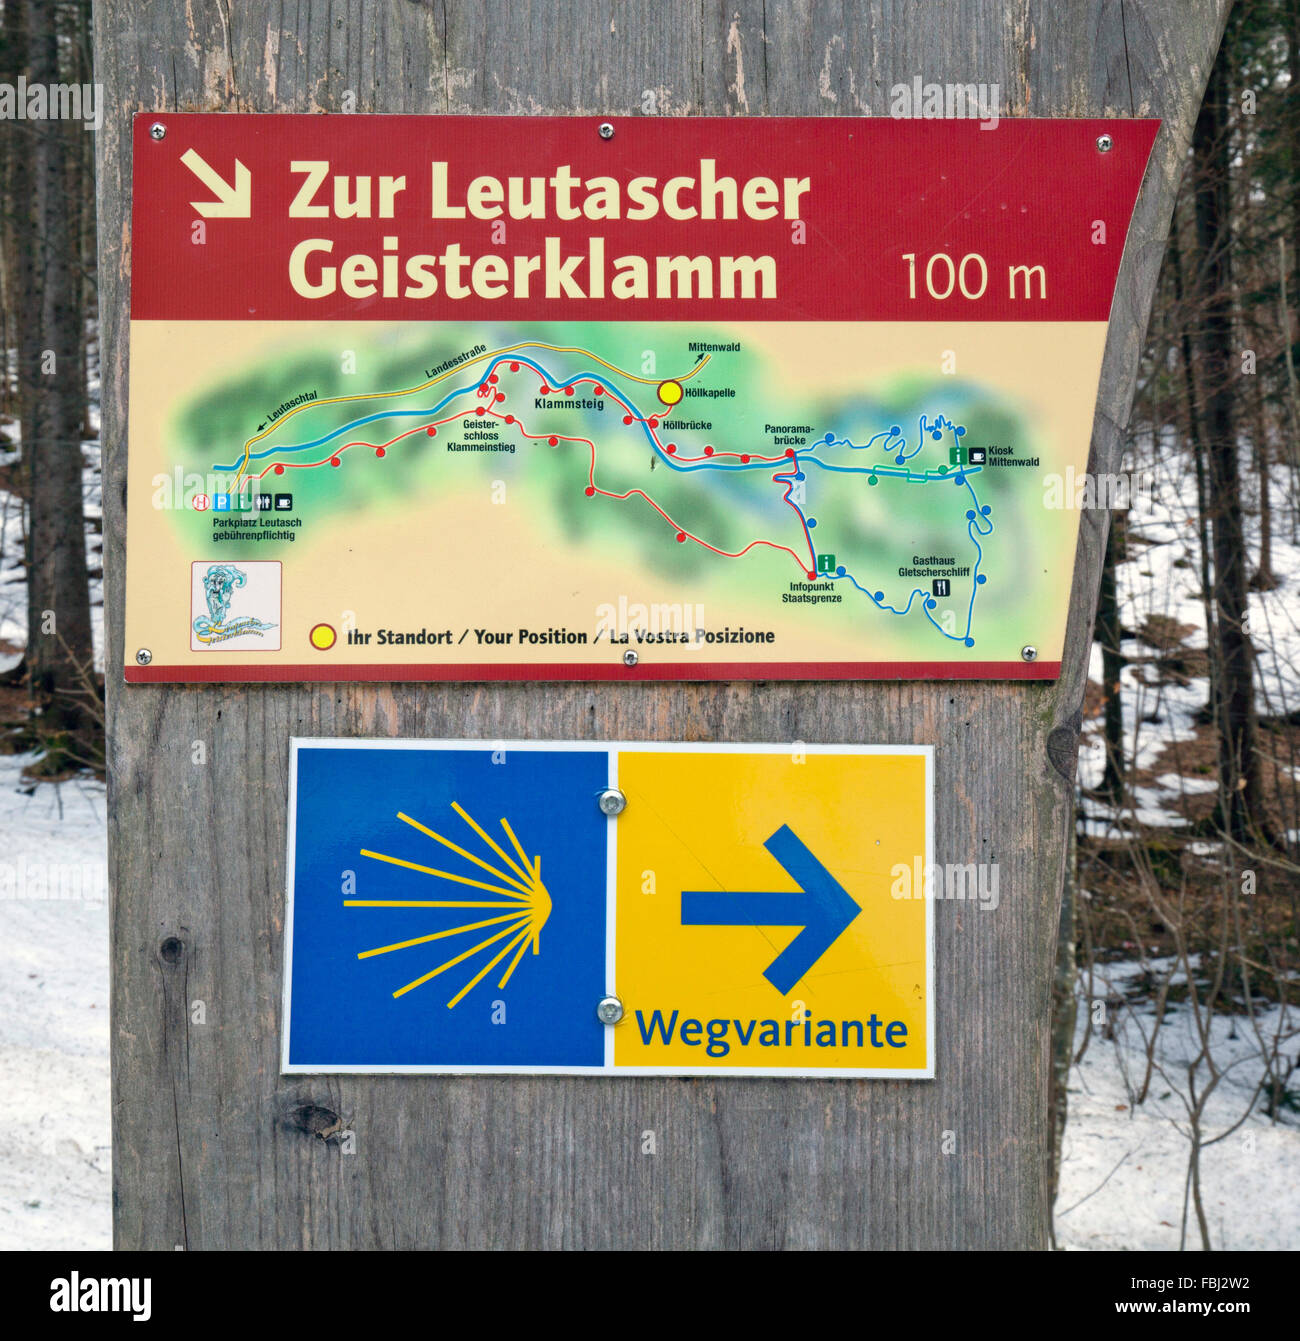 Mappa di escursioni per il Geisterklamm Foto Stock